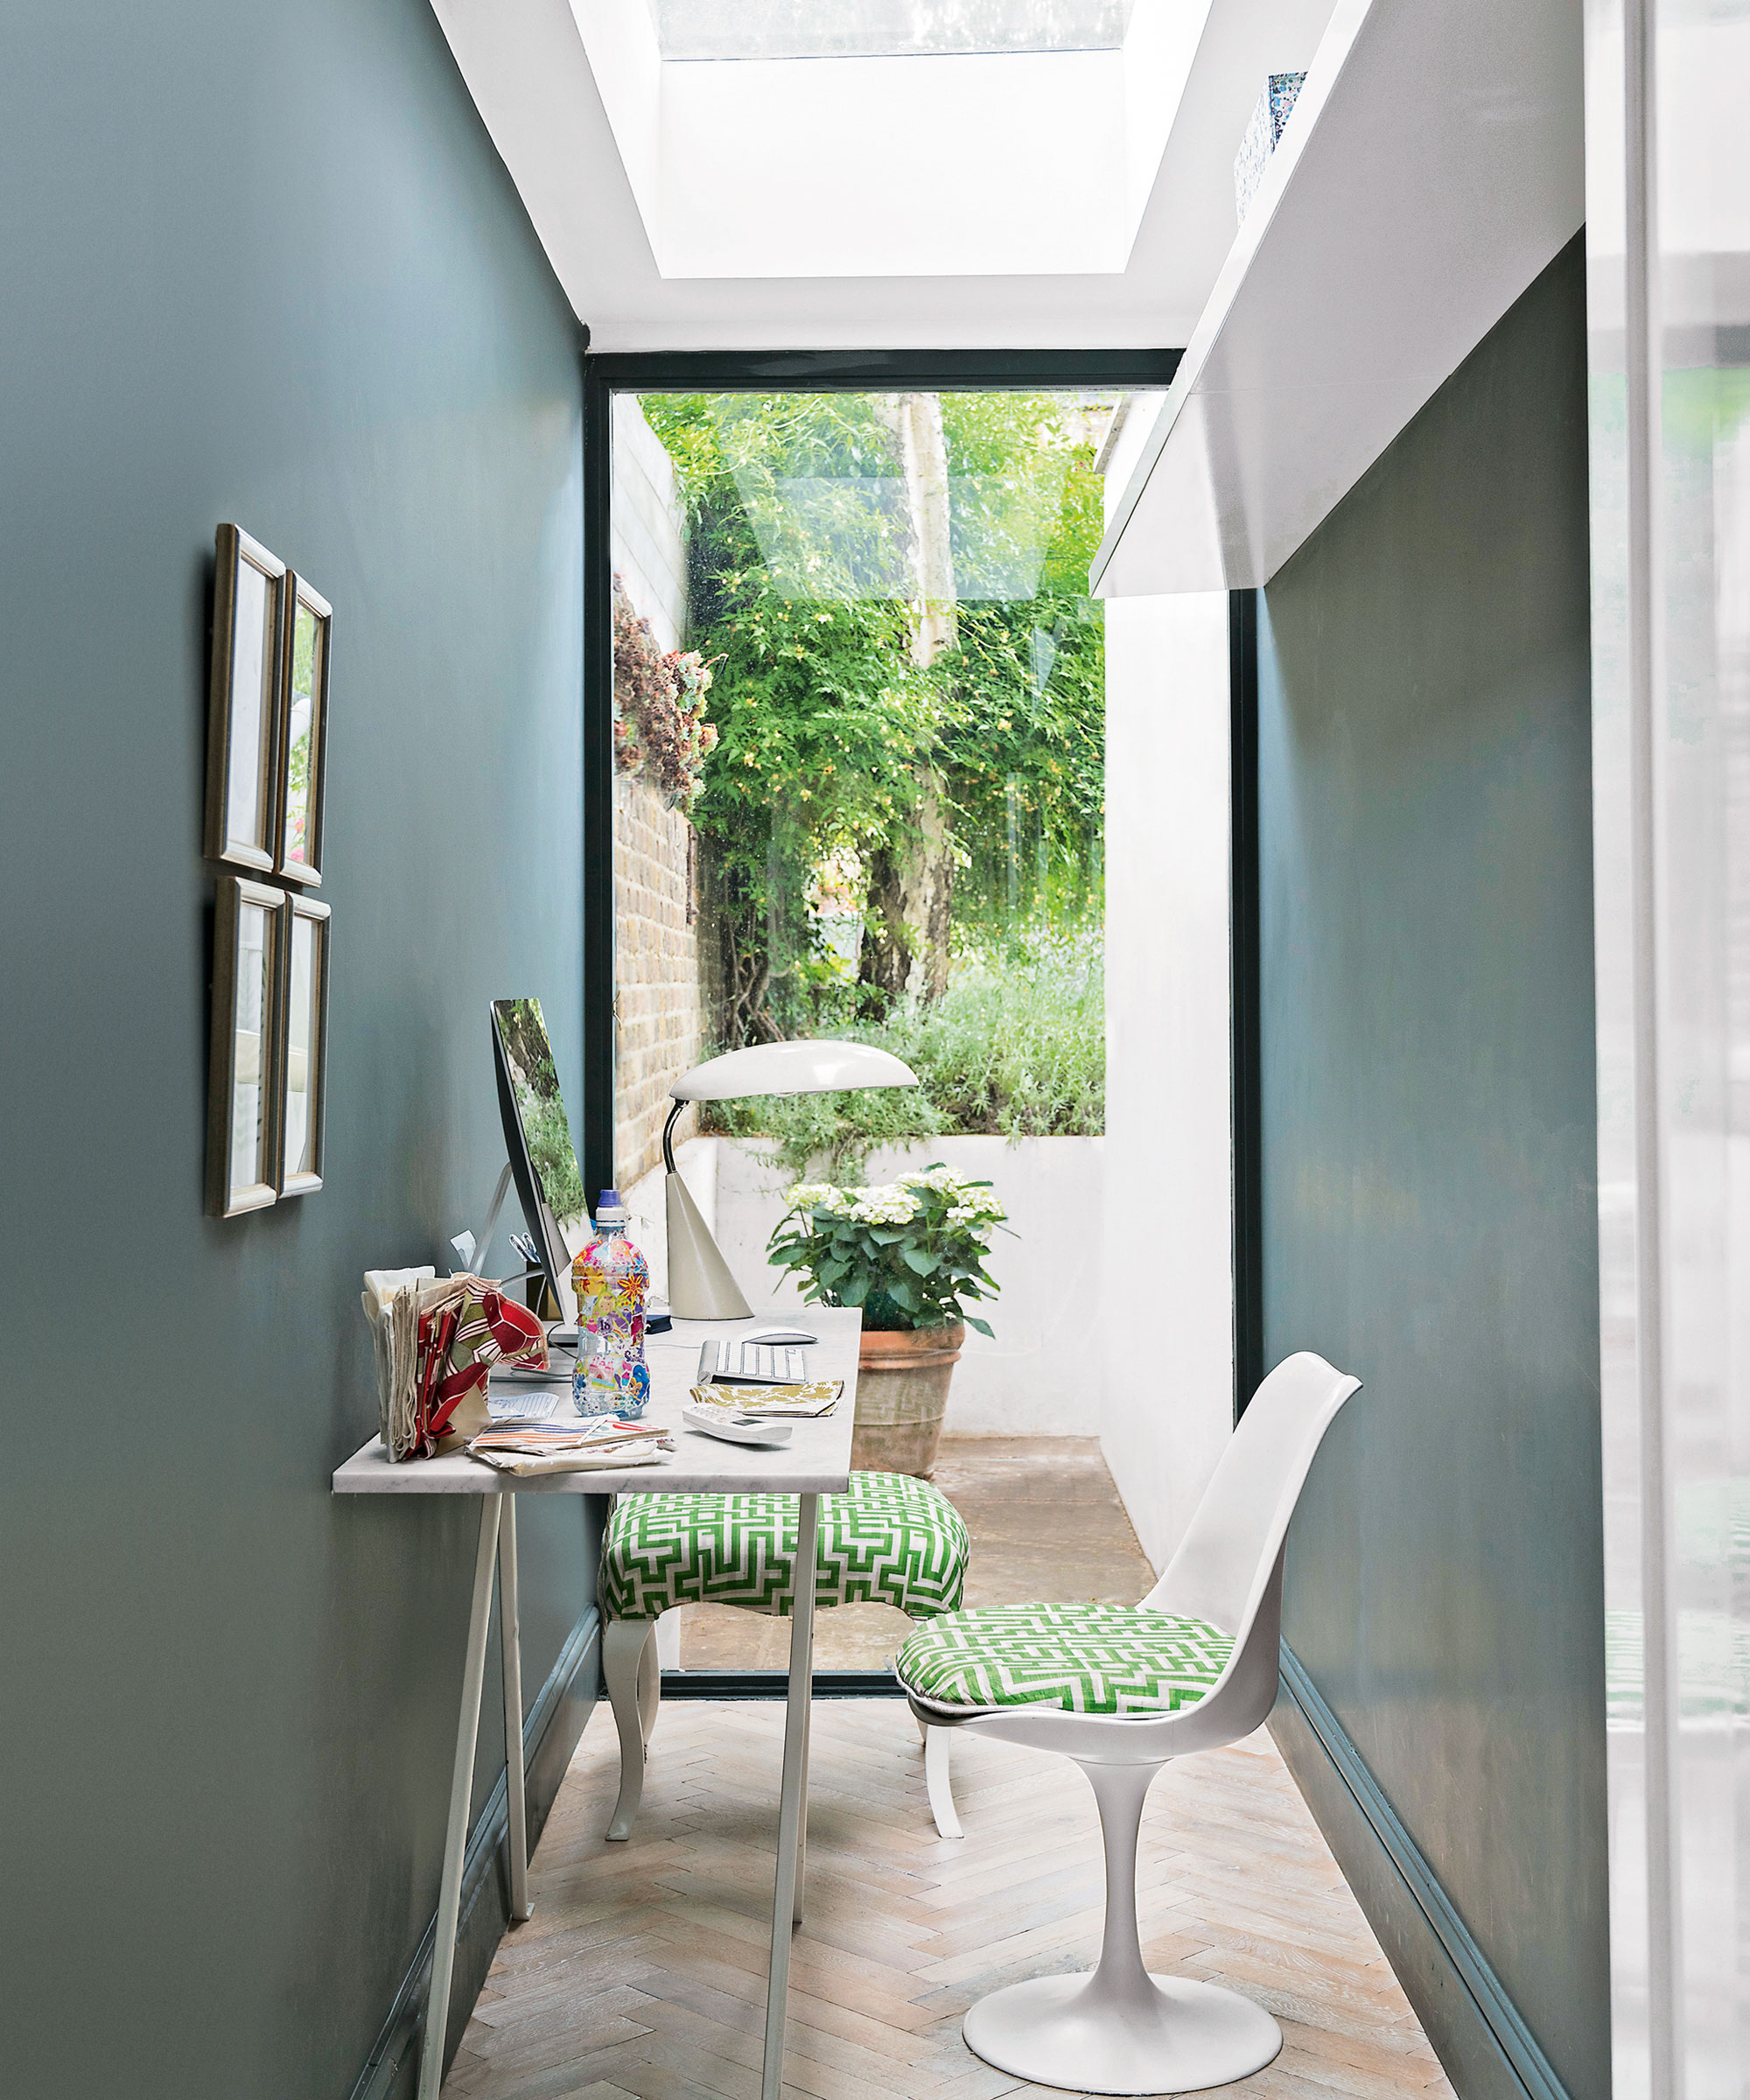 Área de estudio estrecha con piso de parquet, paredes gris azul oscuro, pared de vidrio hacia el jardín, escritorio blanco pequeño y silla tulipán Eero Saarinen con cojín verde.